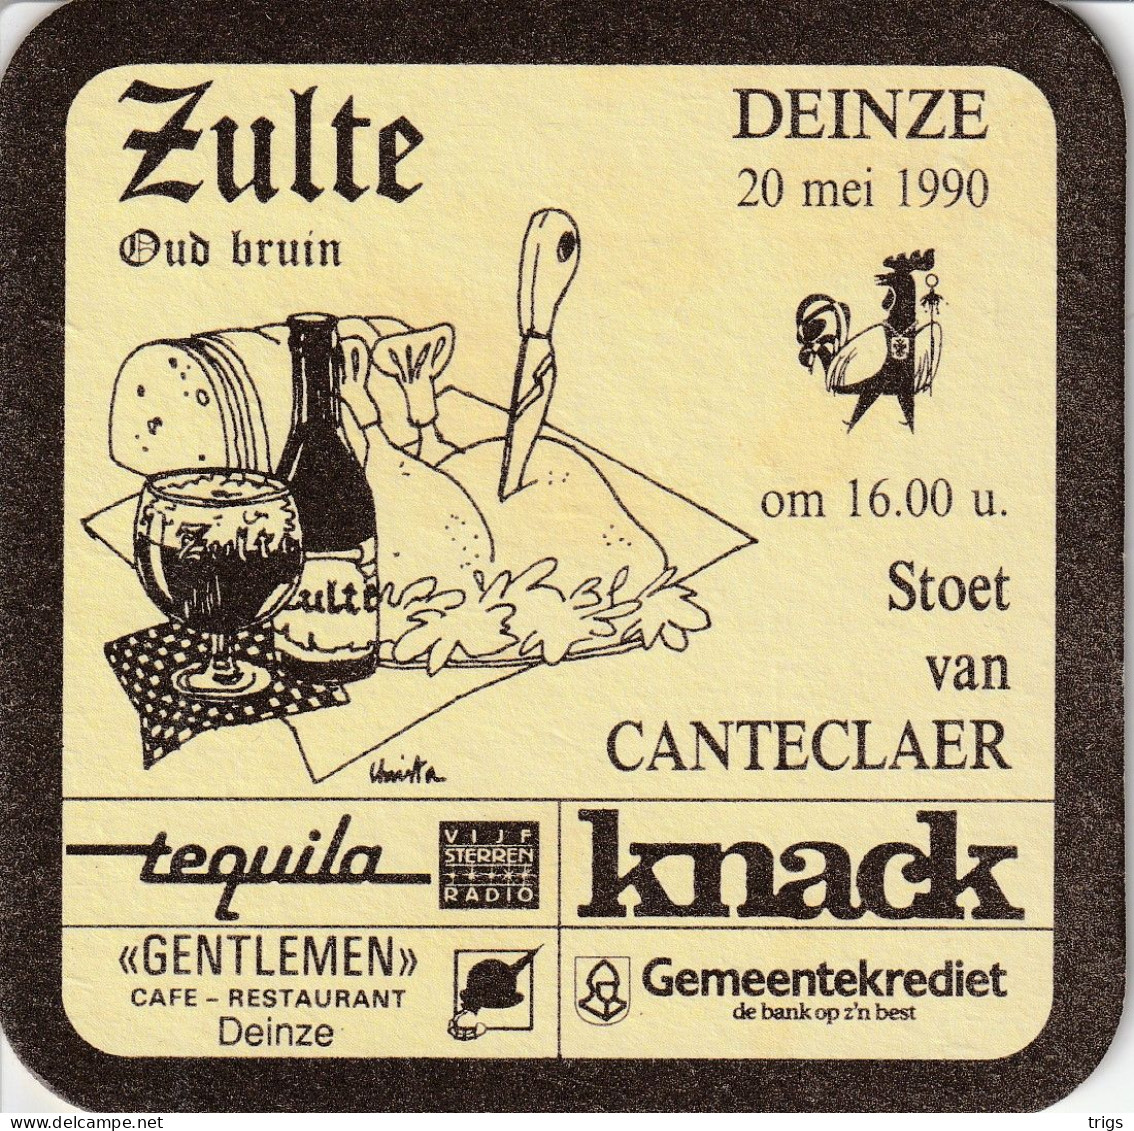 Zulte Oud Bruin - Sotto-boccale